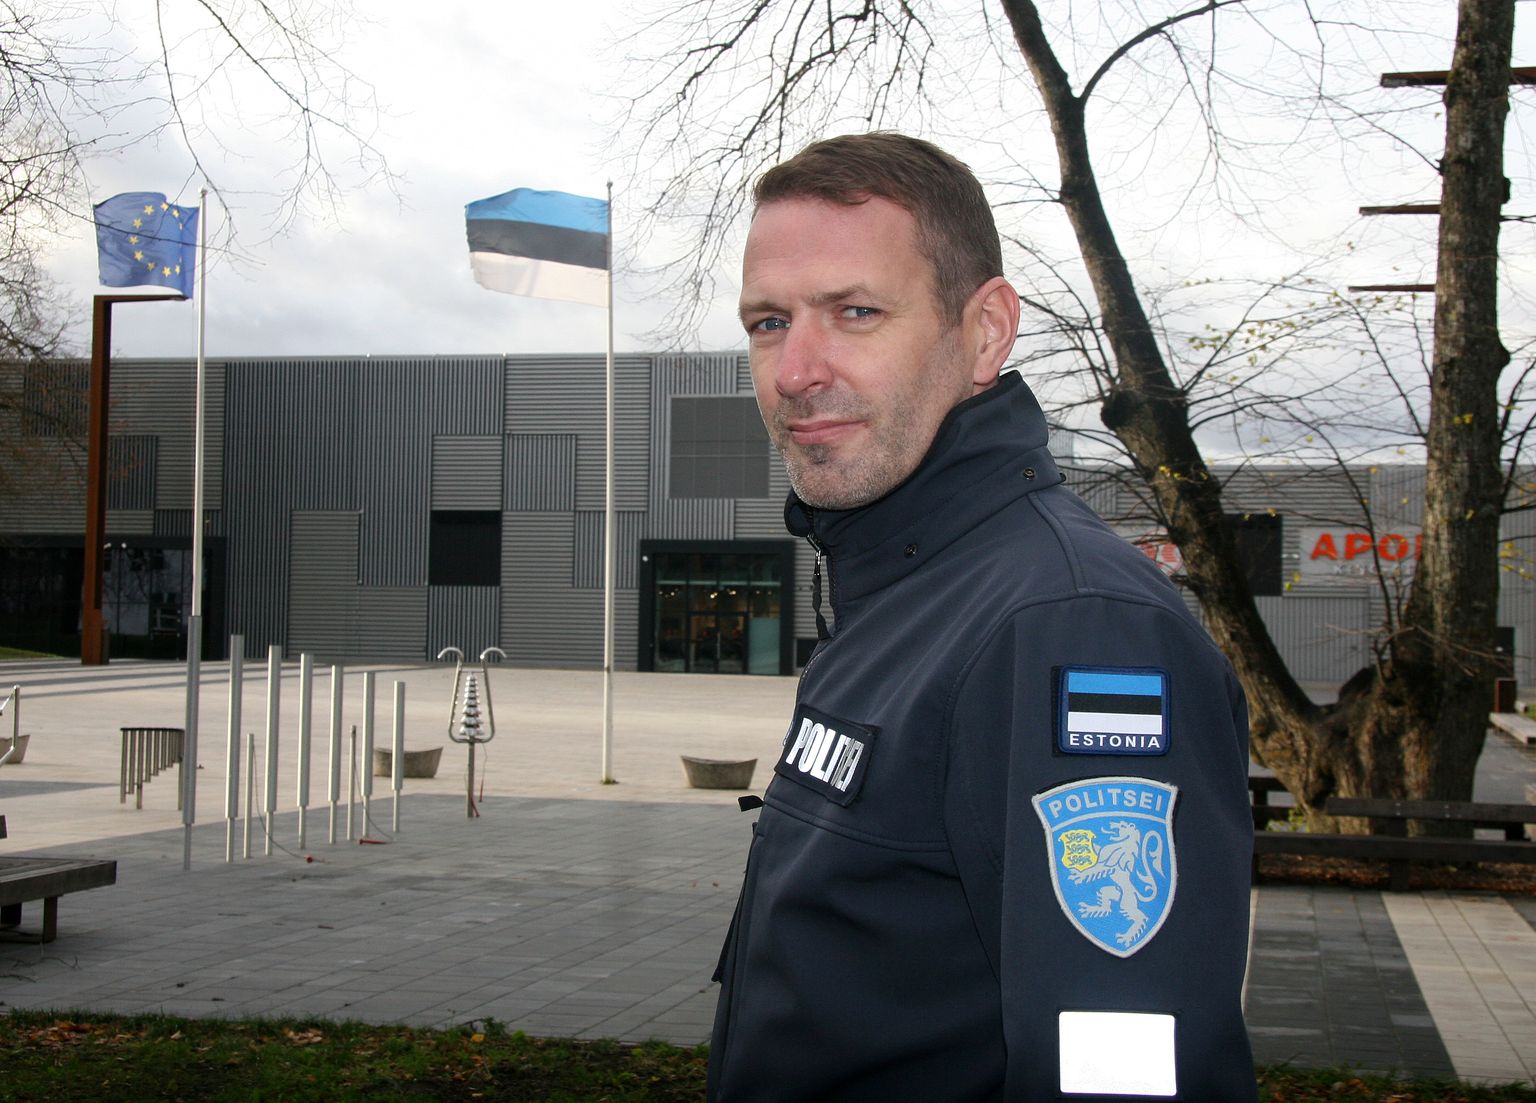 Ida prefekt Tarvo Kruup on korvpalli mänginud nii maakondlikes kui ka Eesti amatöörliigades.